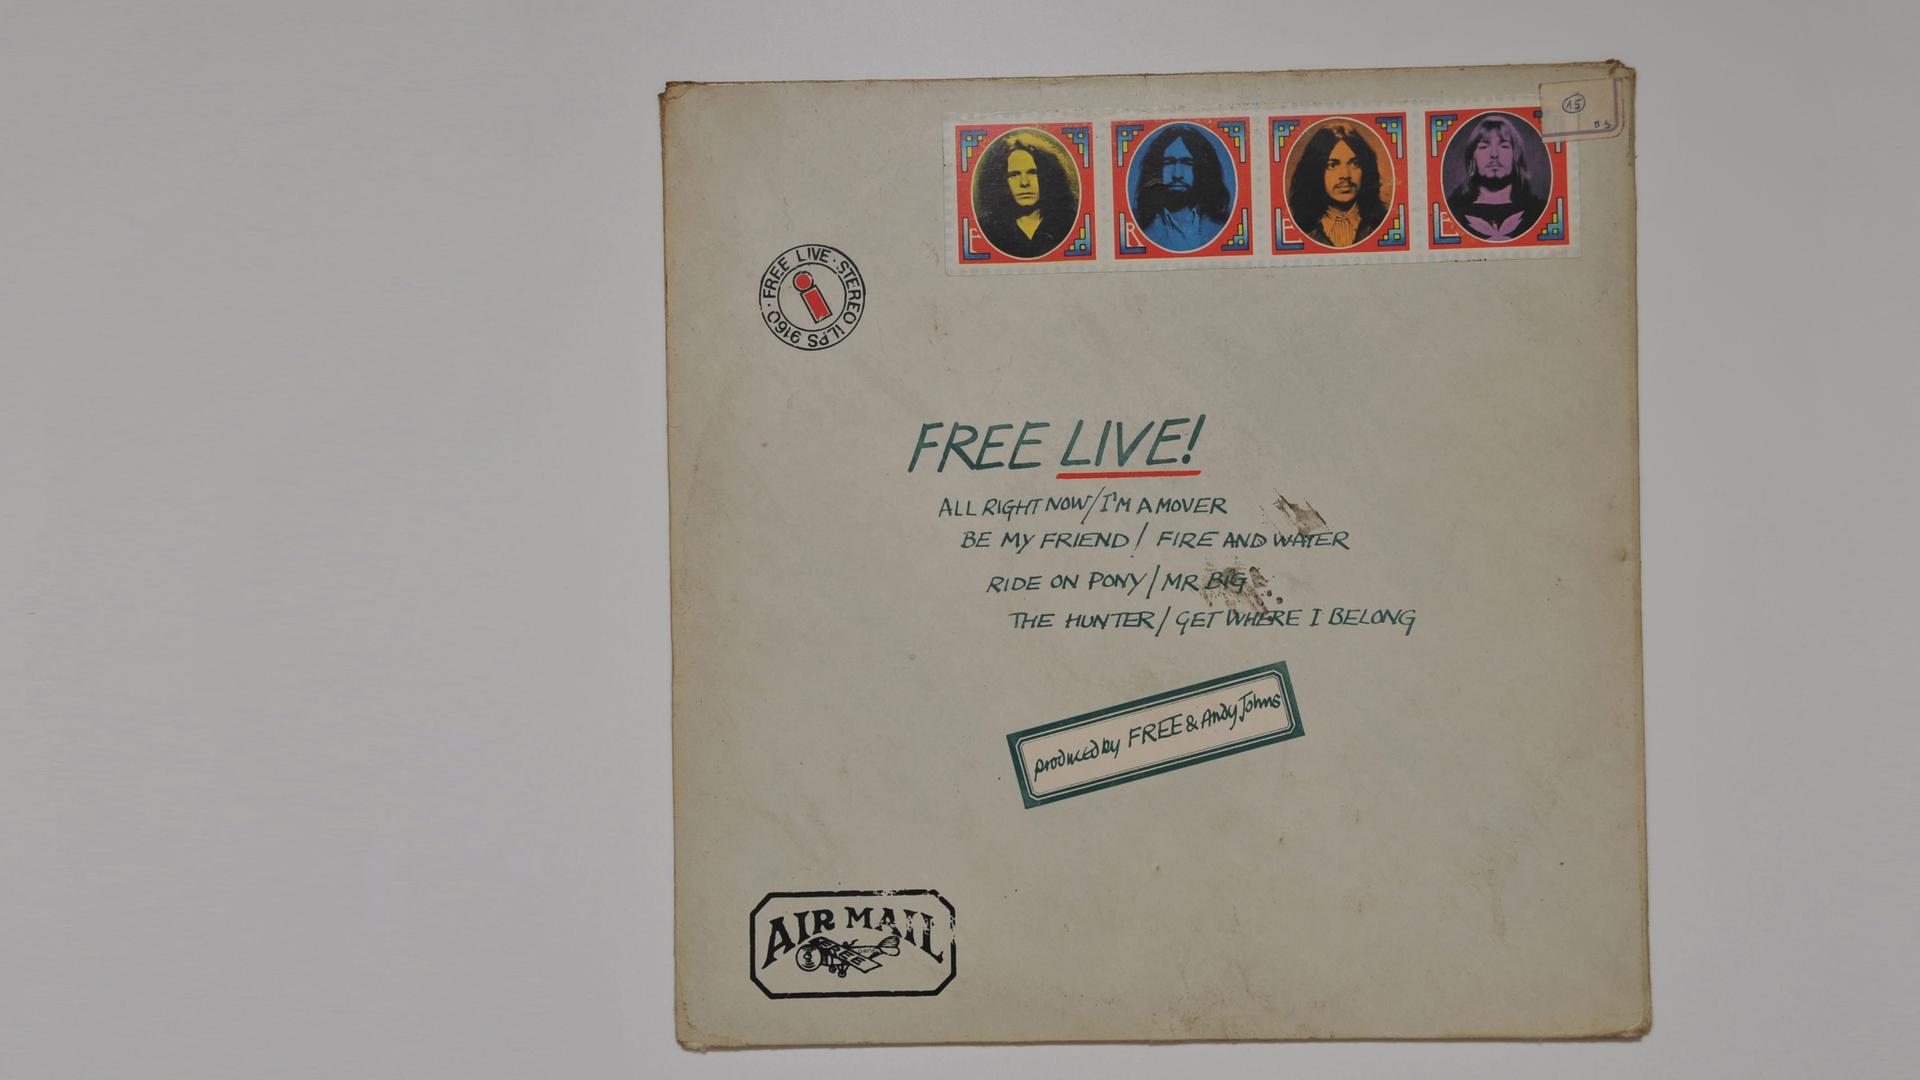 Das Cover der LP "Free Live!" der Gruppe Free ist wie ein Brief gestaltet. Die Köpfe der vier Musiker sind oben rechts in der Gestaltung von Briefmarken abgebildet.Der Titel der Platte steht dort, wo bei einem Brief der Absender steht. Unten links ist ein Stemple Air Mail zu sehen.